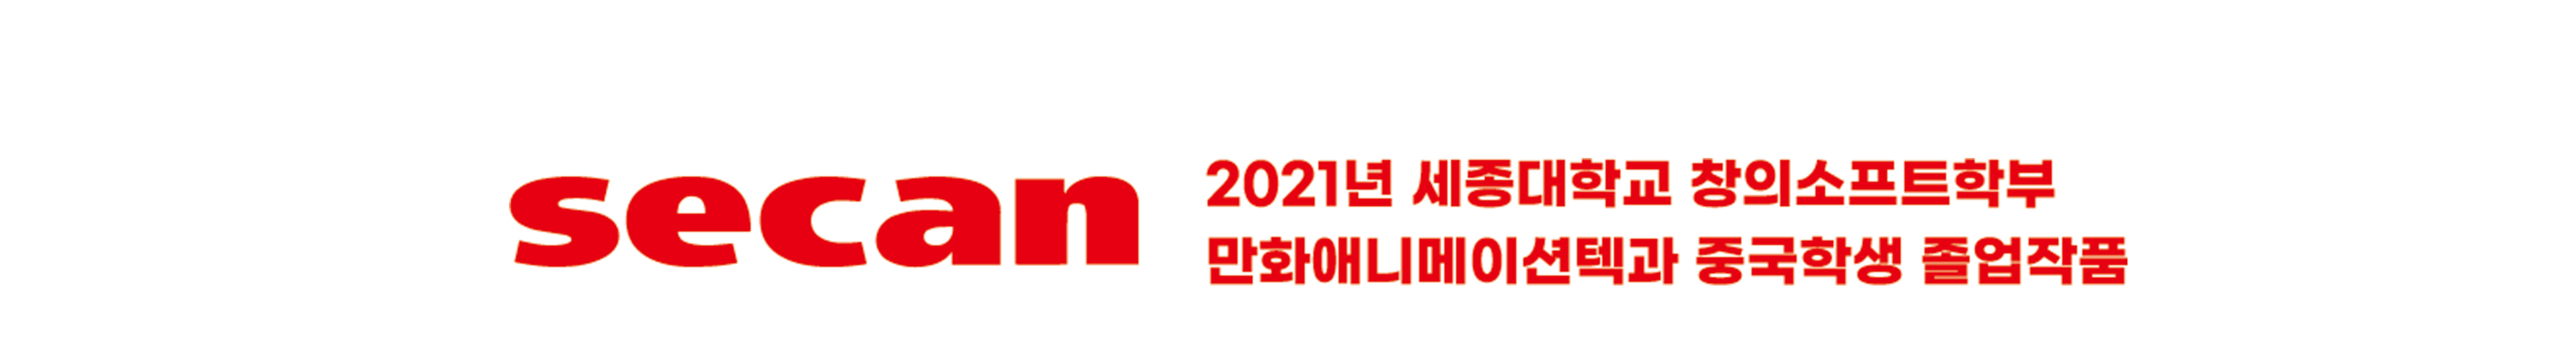 2021 세종대학교 만화애니메이션텍전공's profile banner